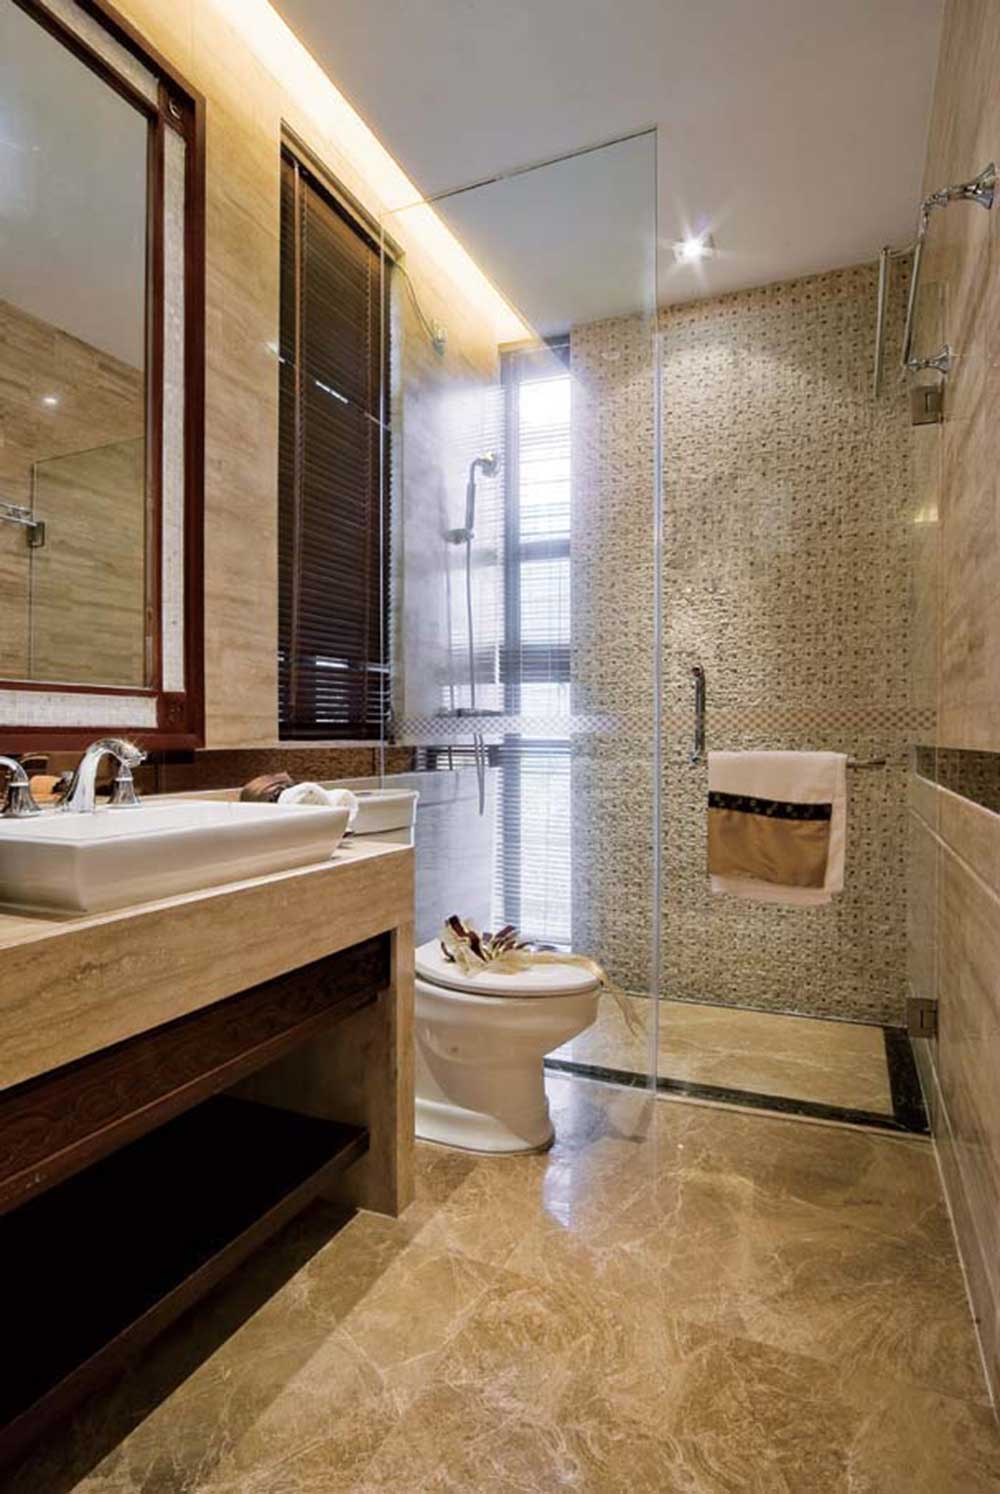 卫生间的马赛克与瓷砖全部采用米黄色，与置物架、百叶窗呼应。